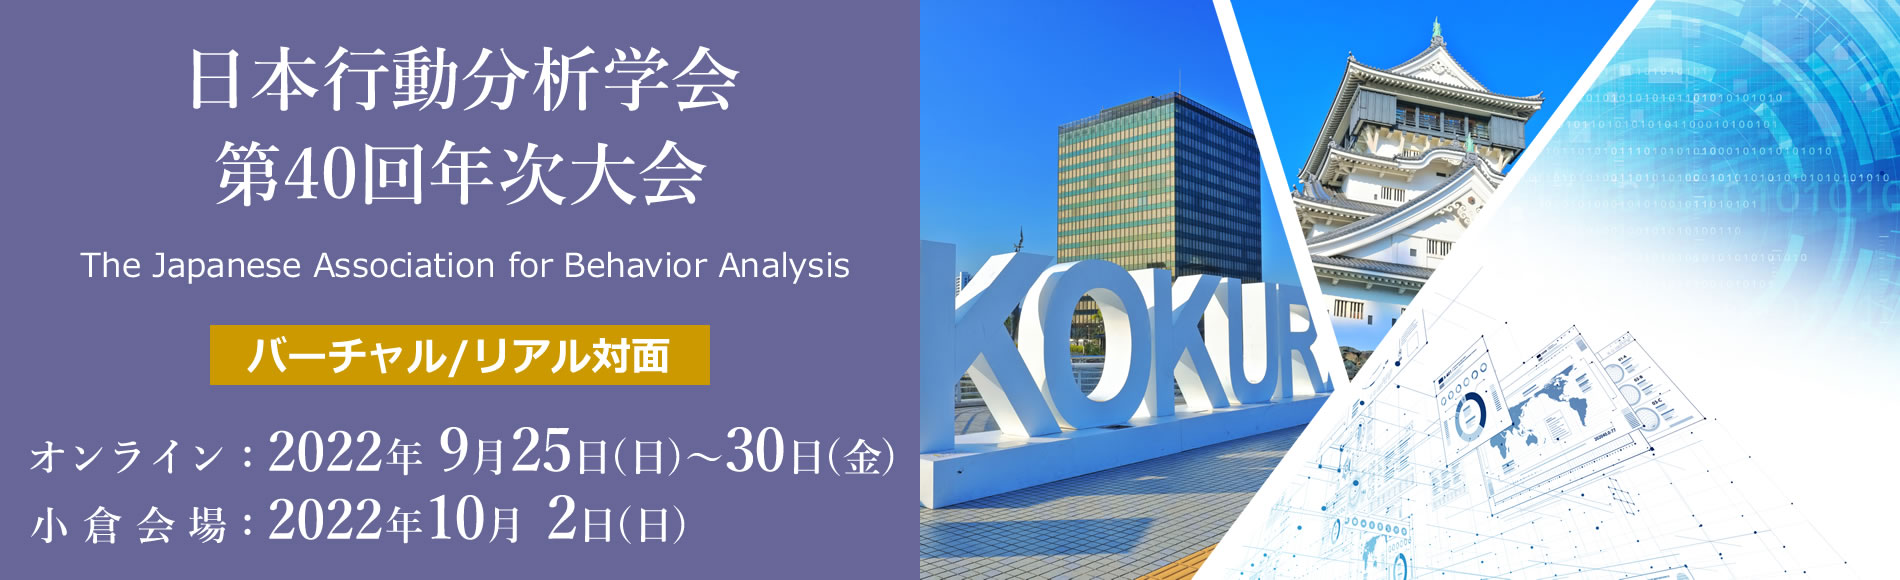 日本行動分析学会 第40回年次大会